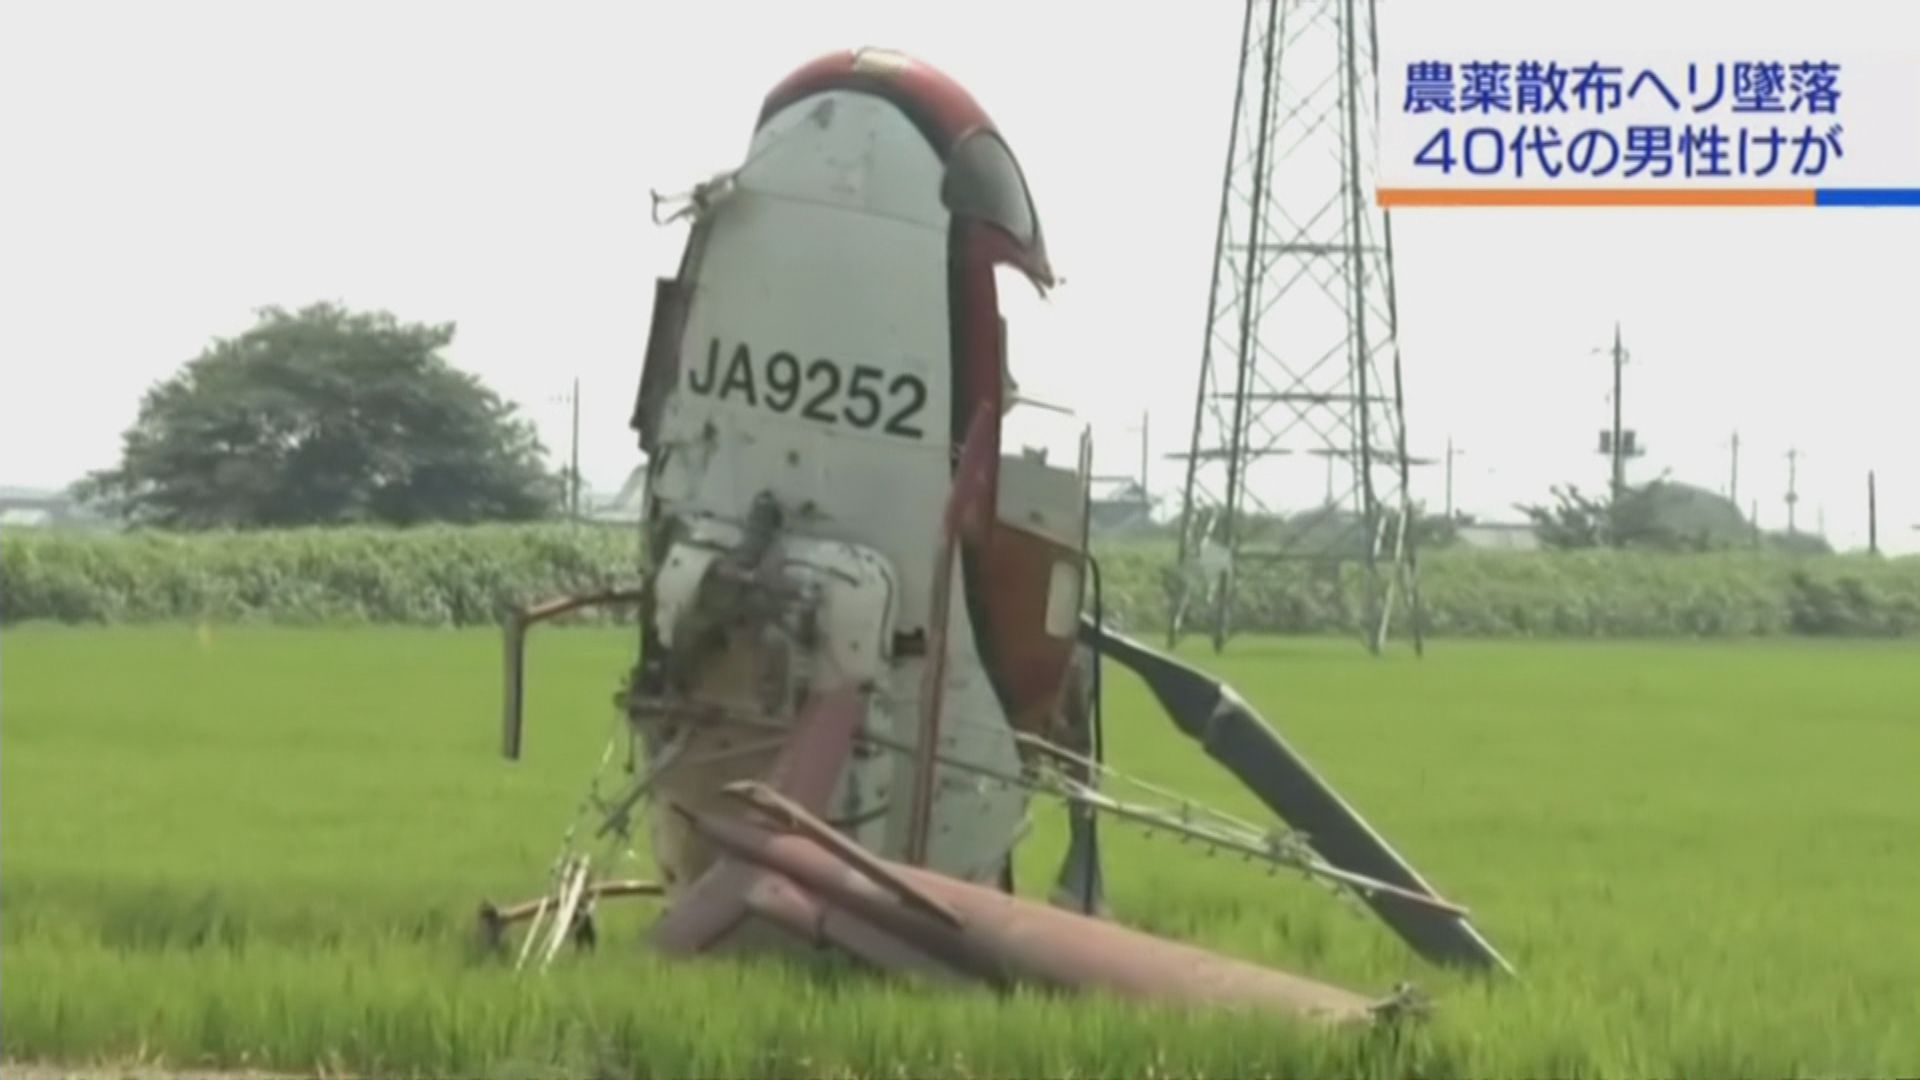 日本茨城縣有直升機噴灑農藥期間墜毀